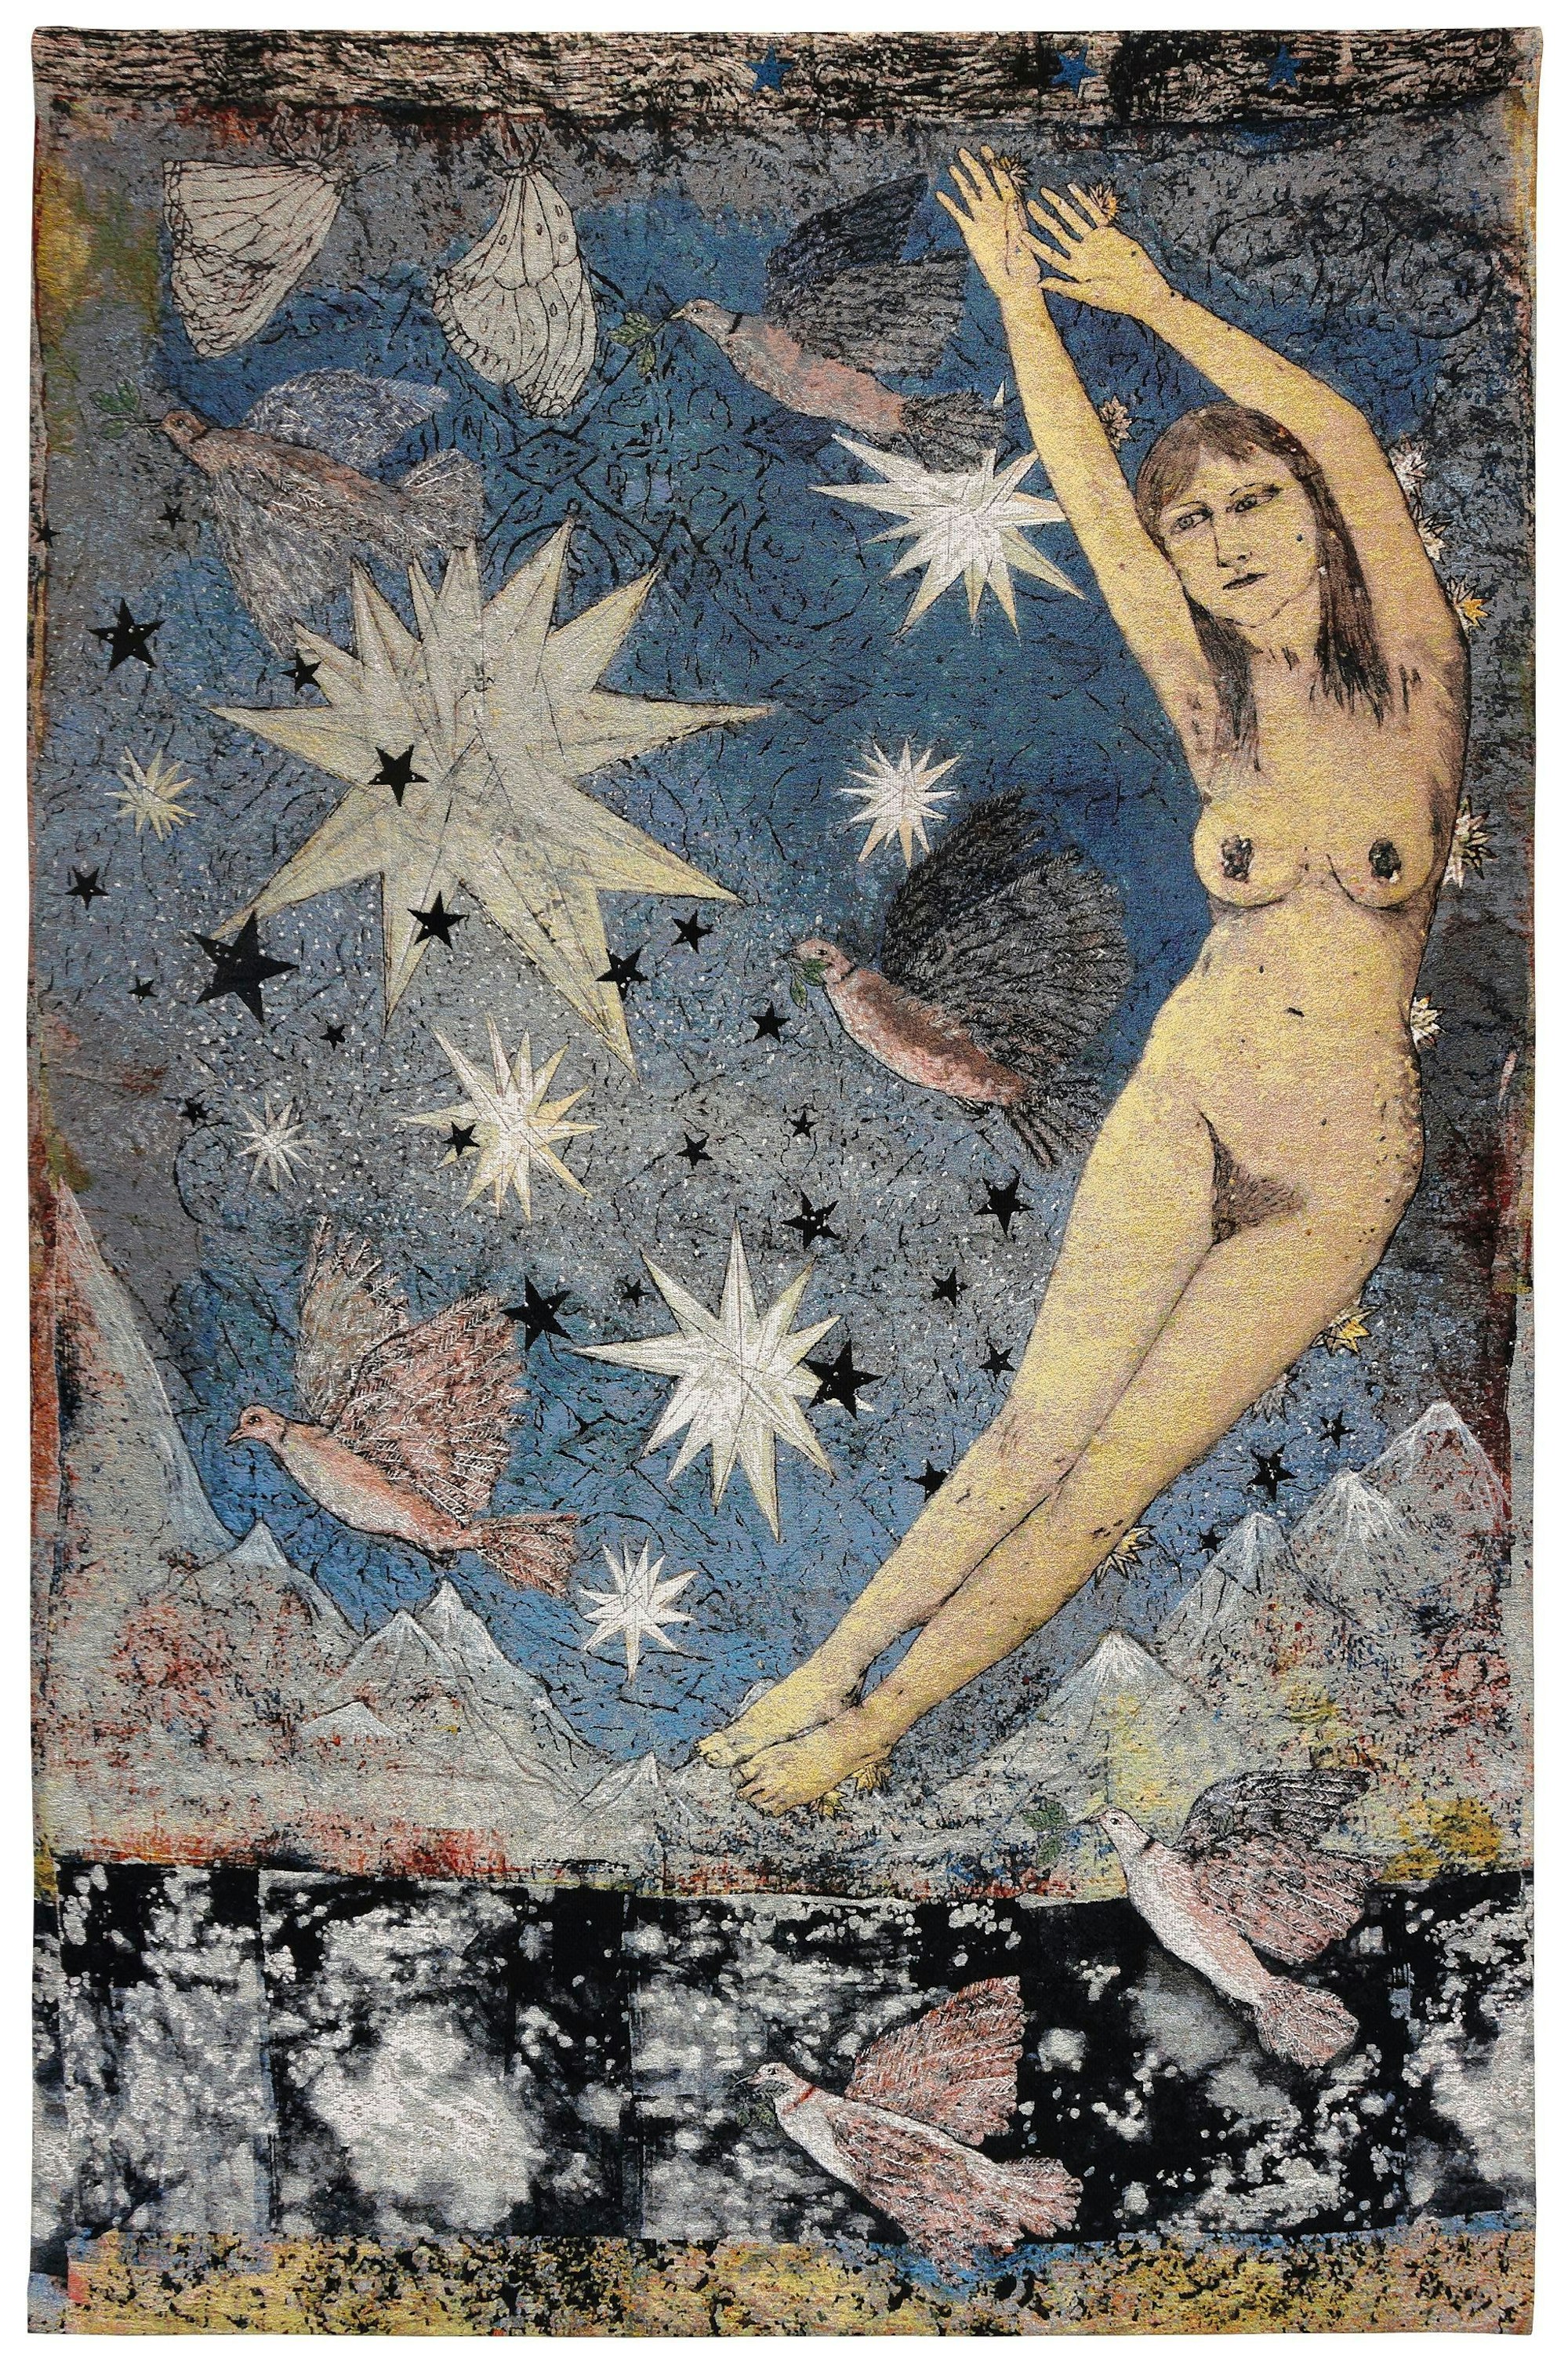 Das Bild zeigt eine Tapisserie von Kiki Smith, es ist ein Hochformat. Zu sehen ist eine nackte, schwebende Frau, die die Arme nach oben streckt. Um sie herum fliegen Tauben. Im Hintergrund Sterne, Berge und ein See. Das Bild hat etwas Sakrales.